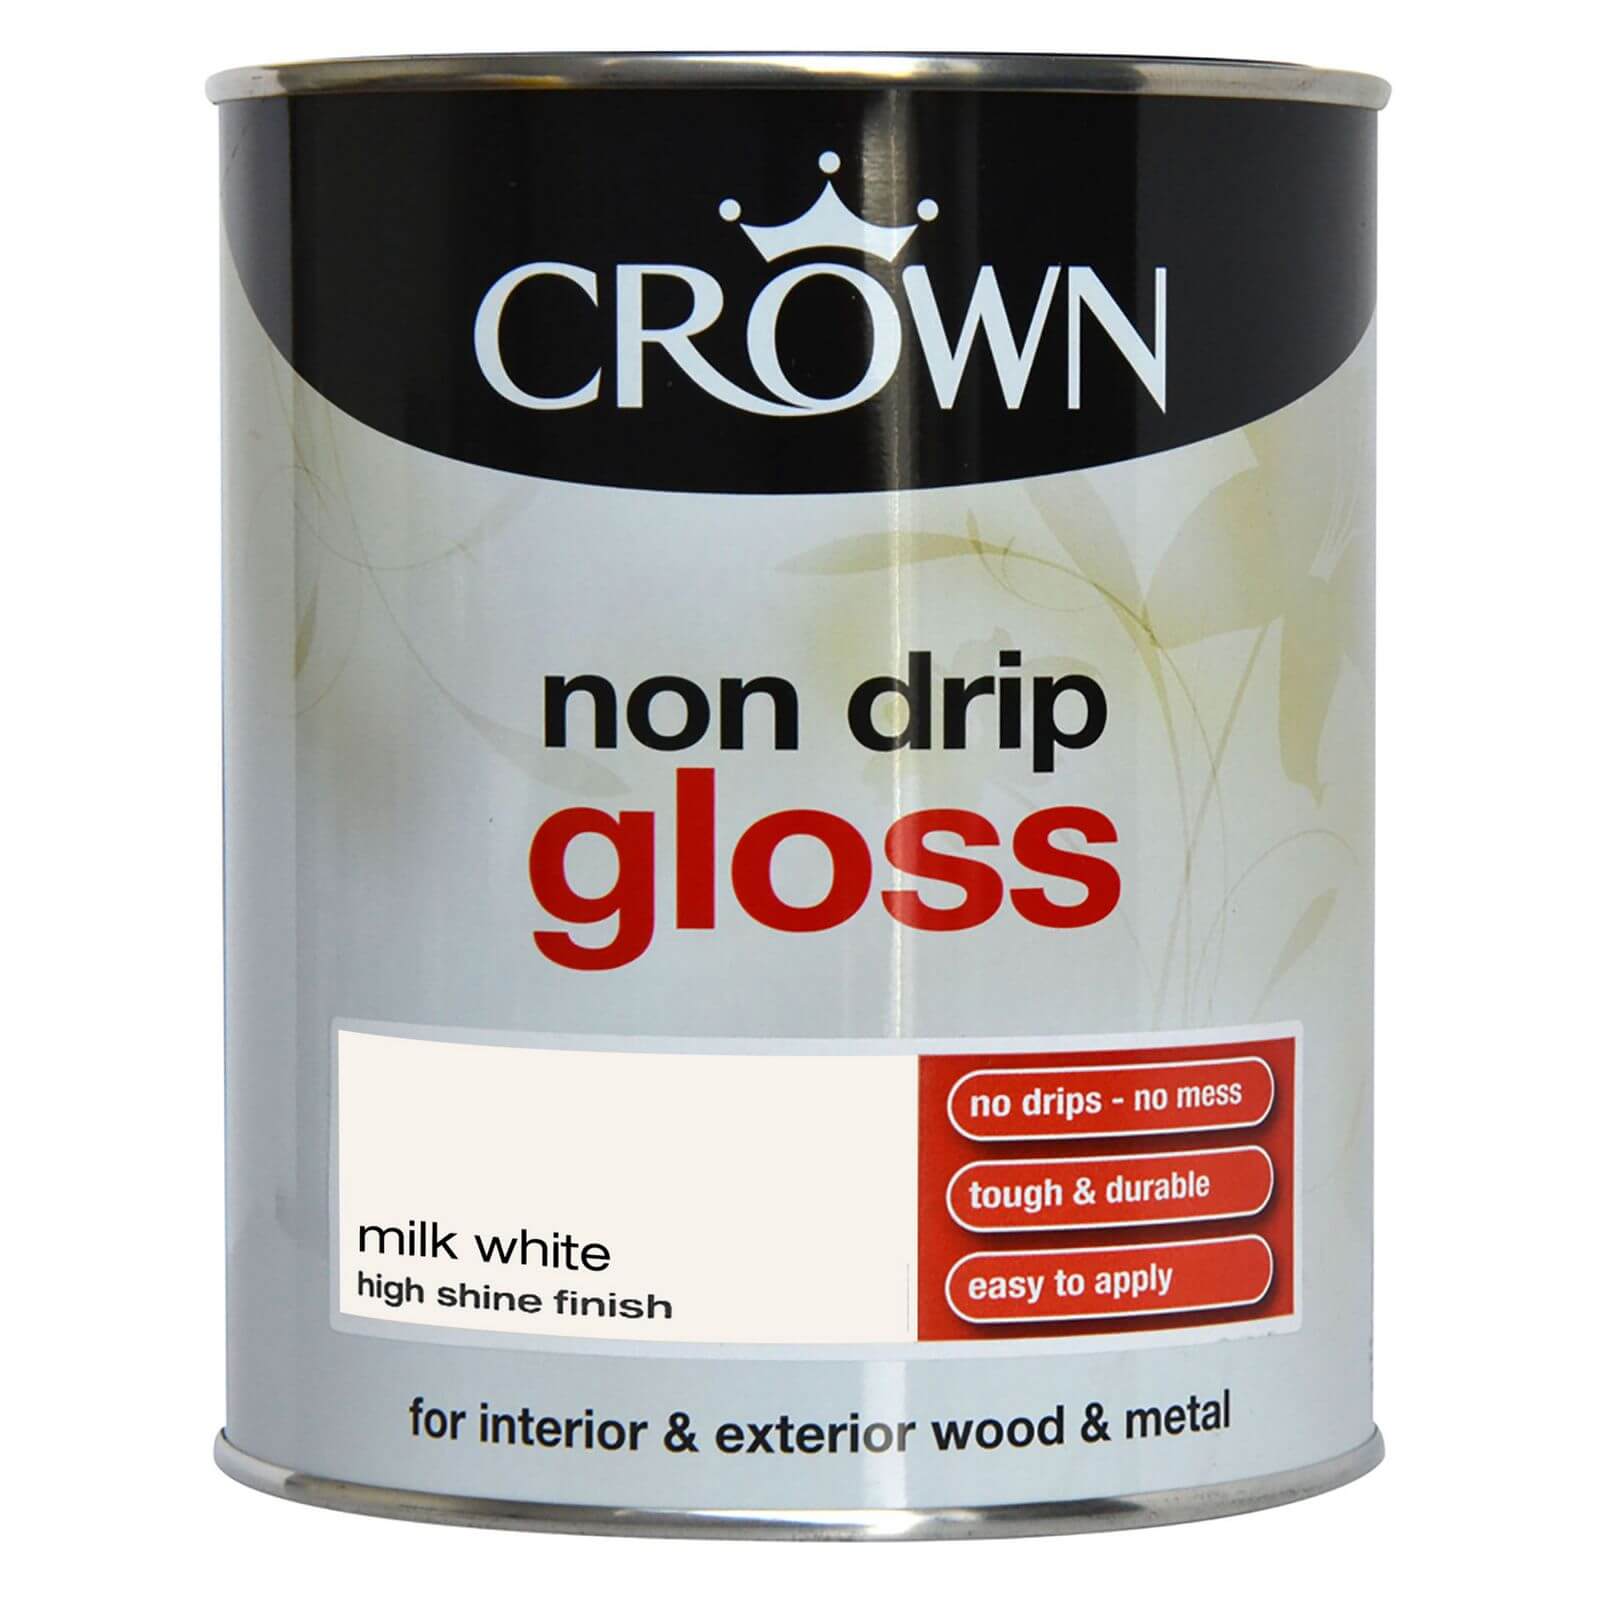 Crown Non Drip Gloss Paint Milk White - 750ml